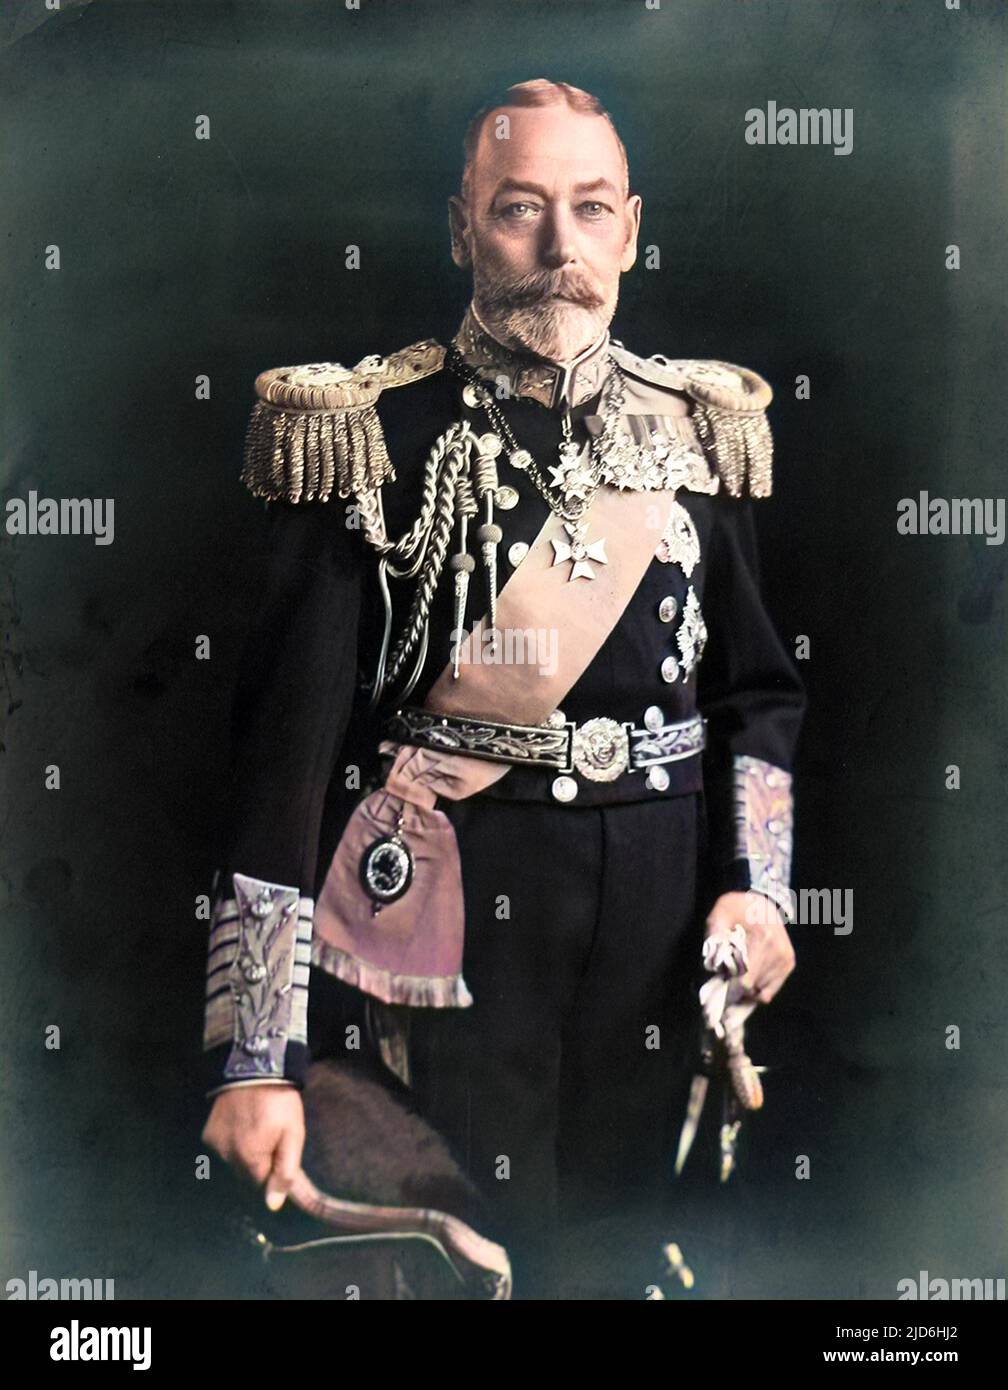 König George V. von Großbritannien und Nordirland (1865 - 1936), abgebildet mit seinem Royal Navy Admiral der Flottenuniform. Kolorierte Version von: 10220950 Datum: Ca. 1930 Stockfoto